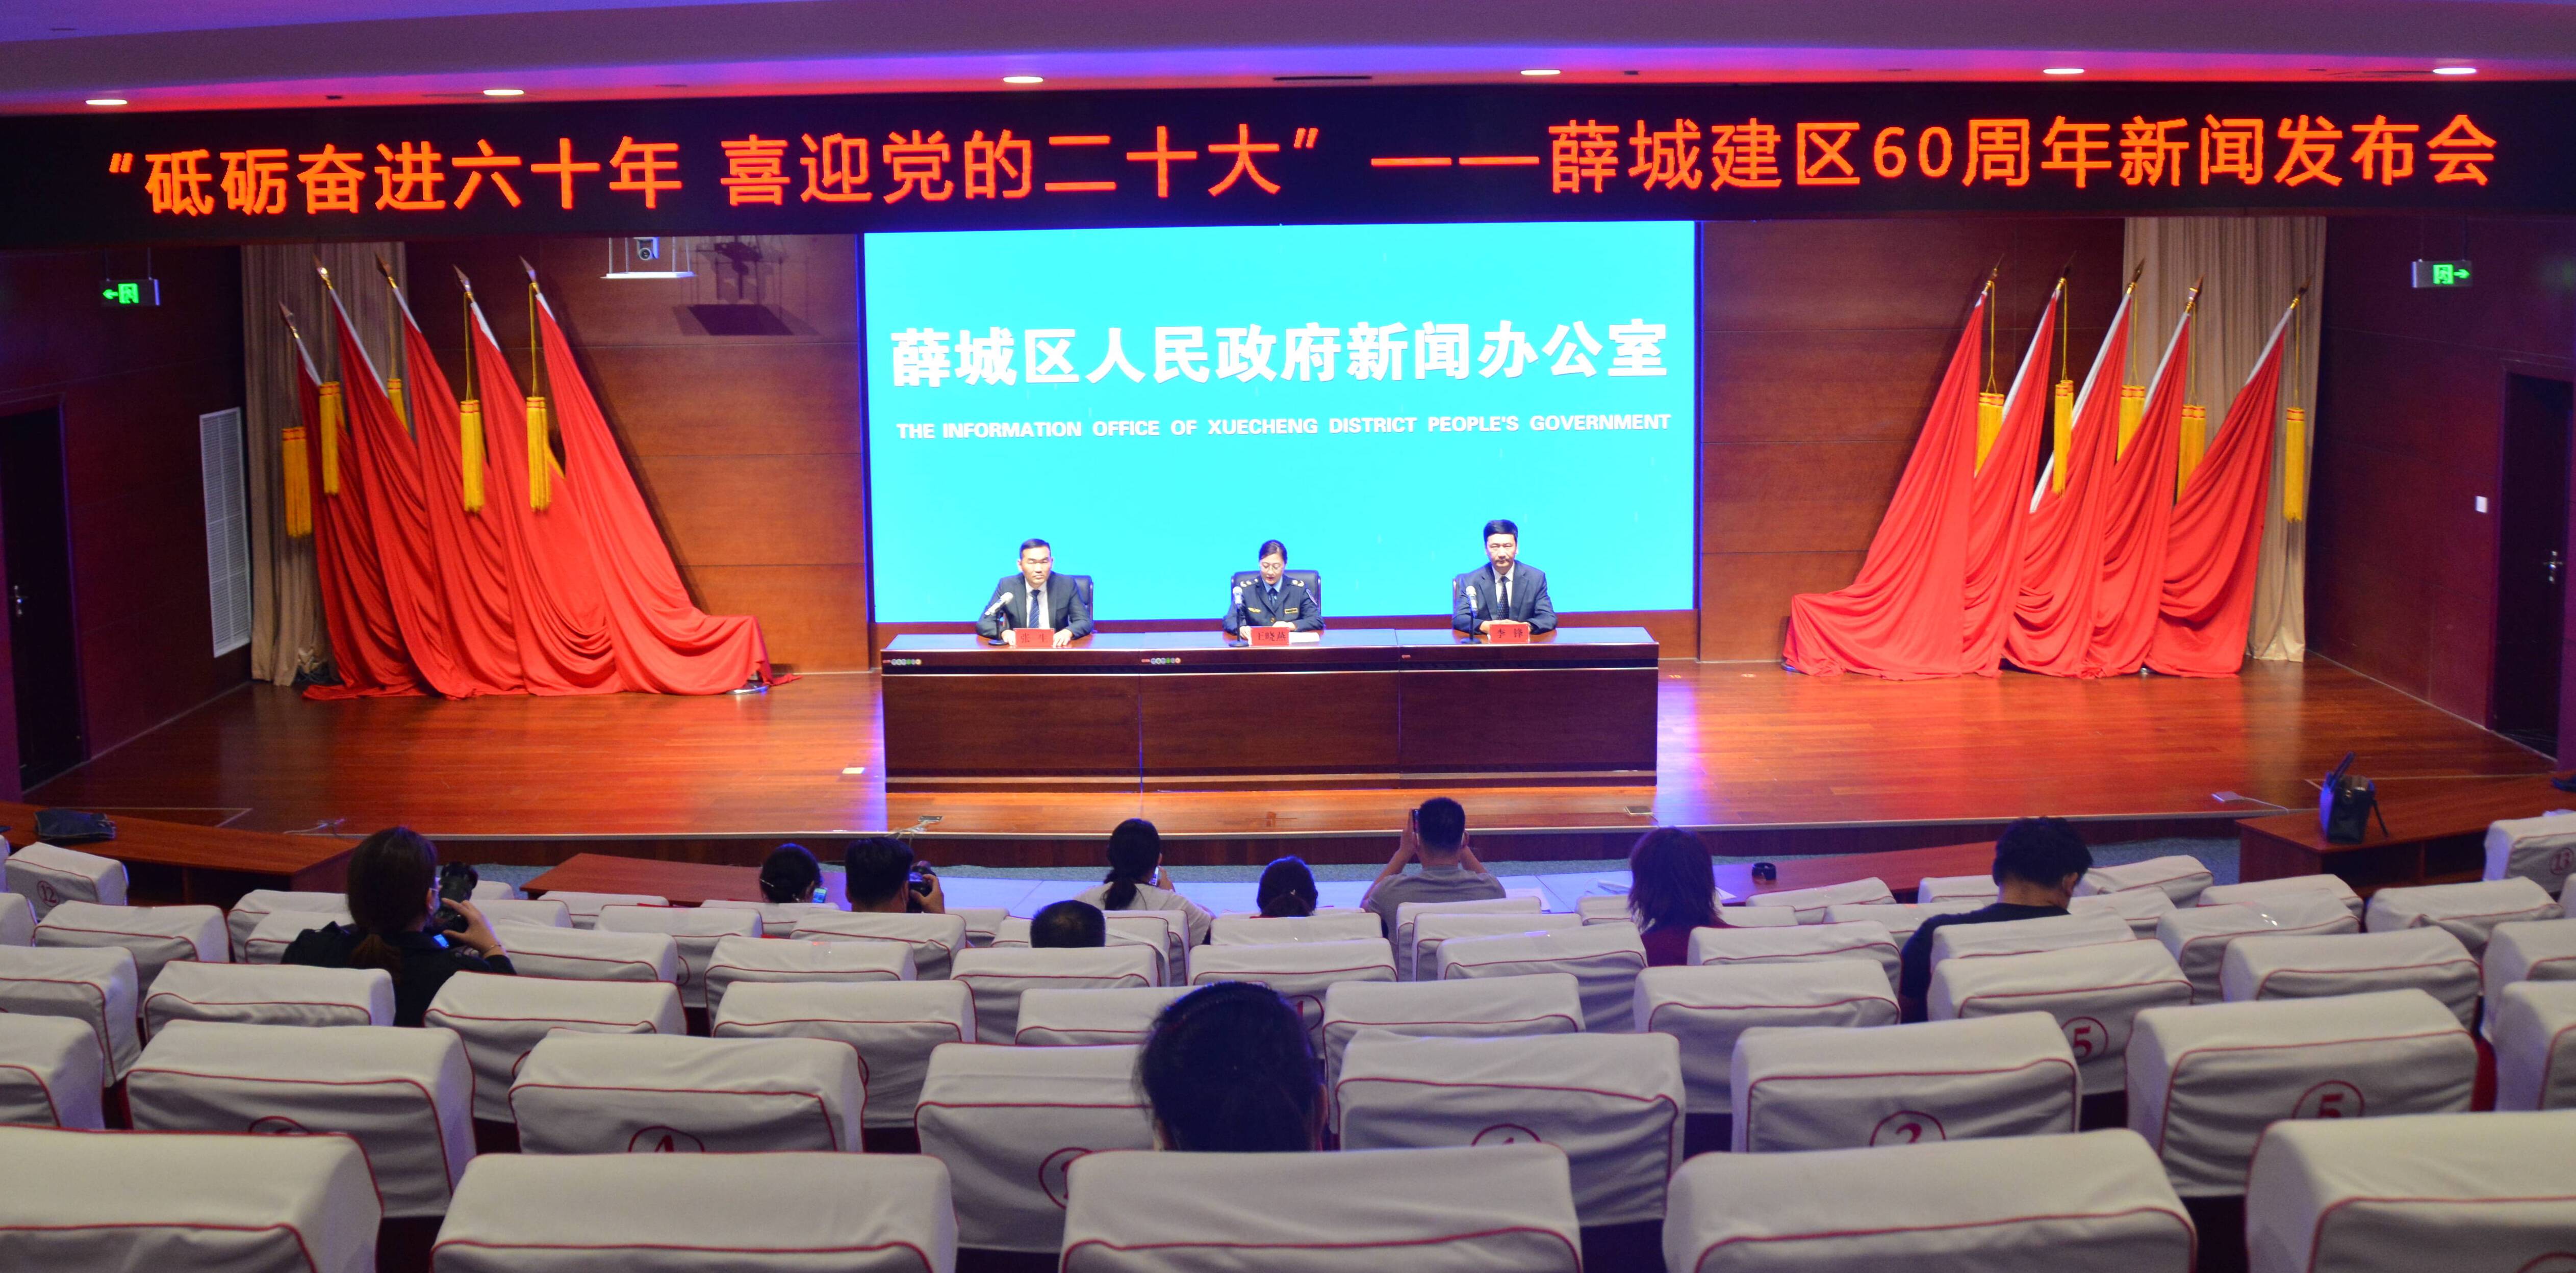 枣庄薛城分散供养特困人员签署新照护协议1390人